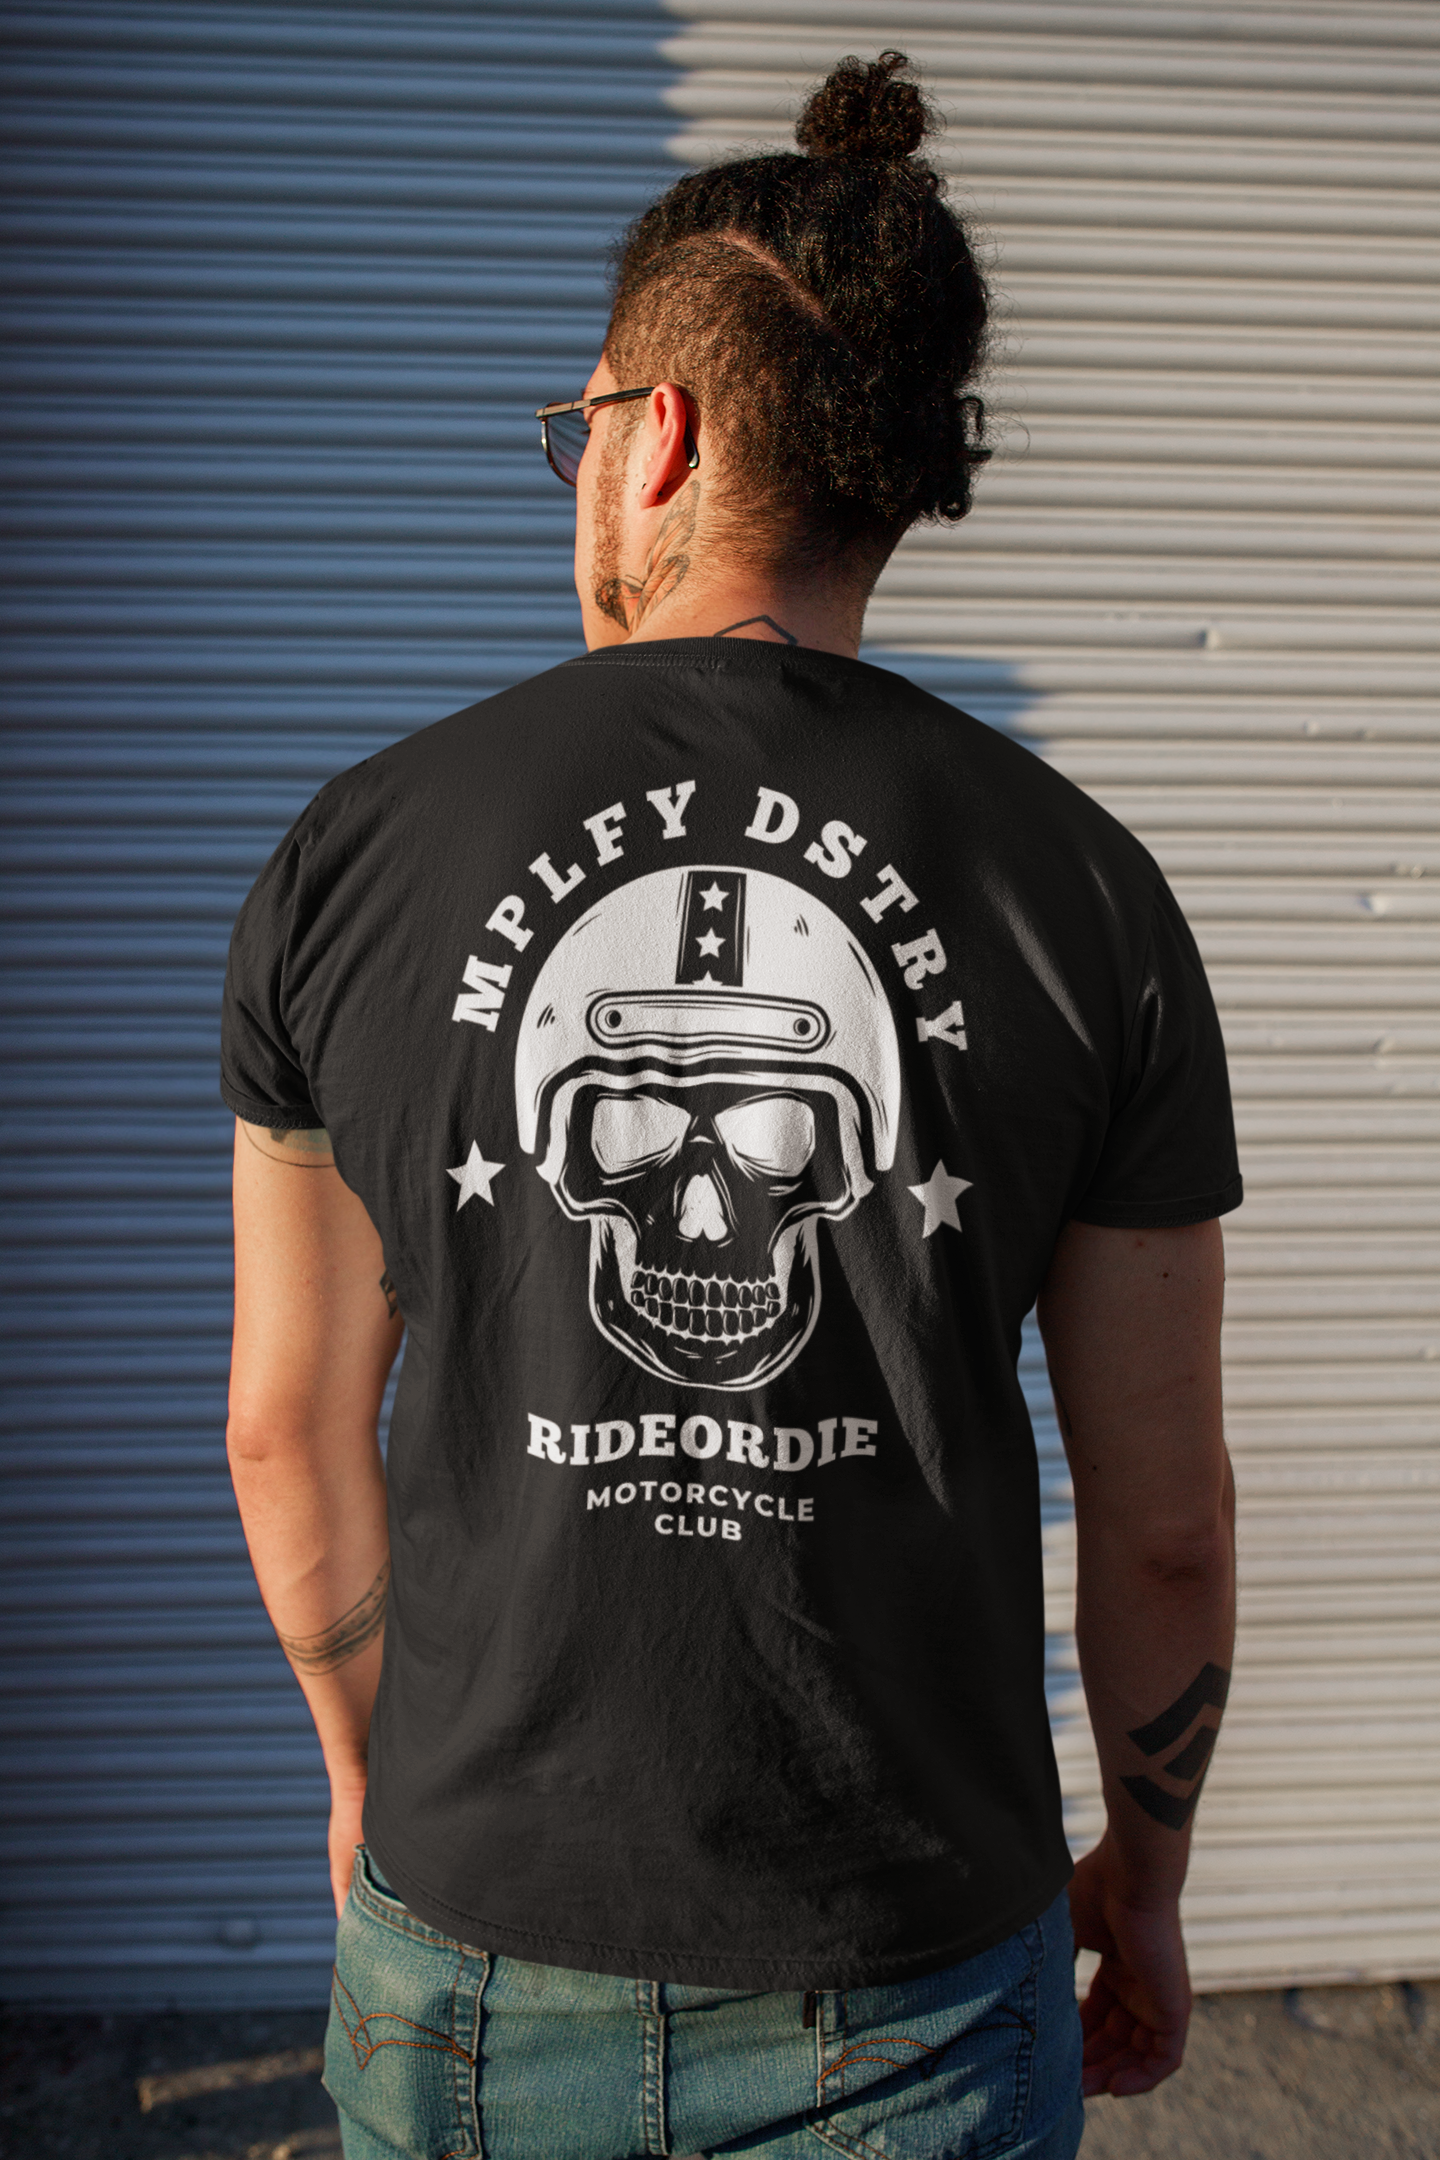 RIDEORDIE Classic Fit AmplifyDestroy Print Tee Shirt Biker Punk Rock Ride Or Die